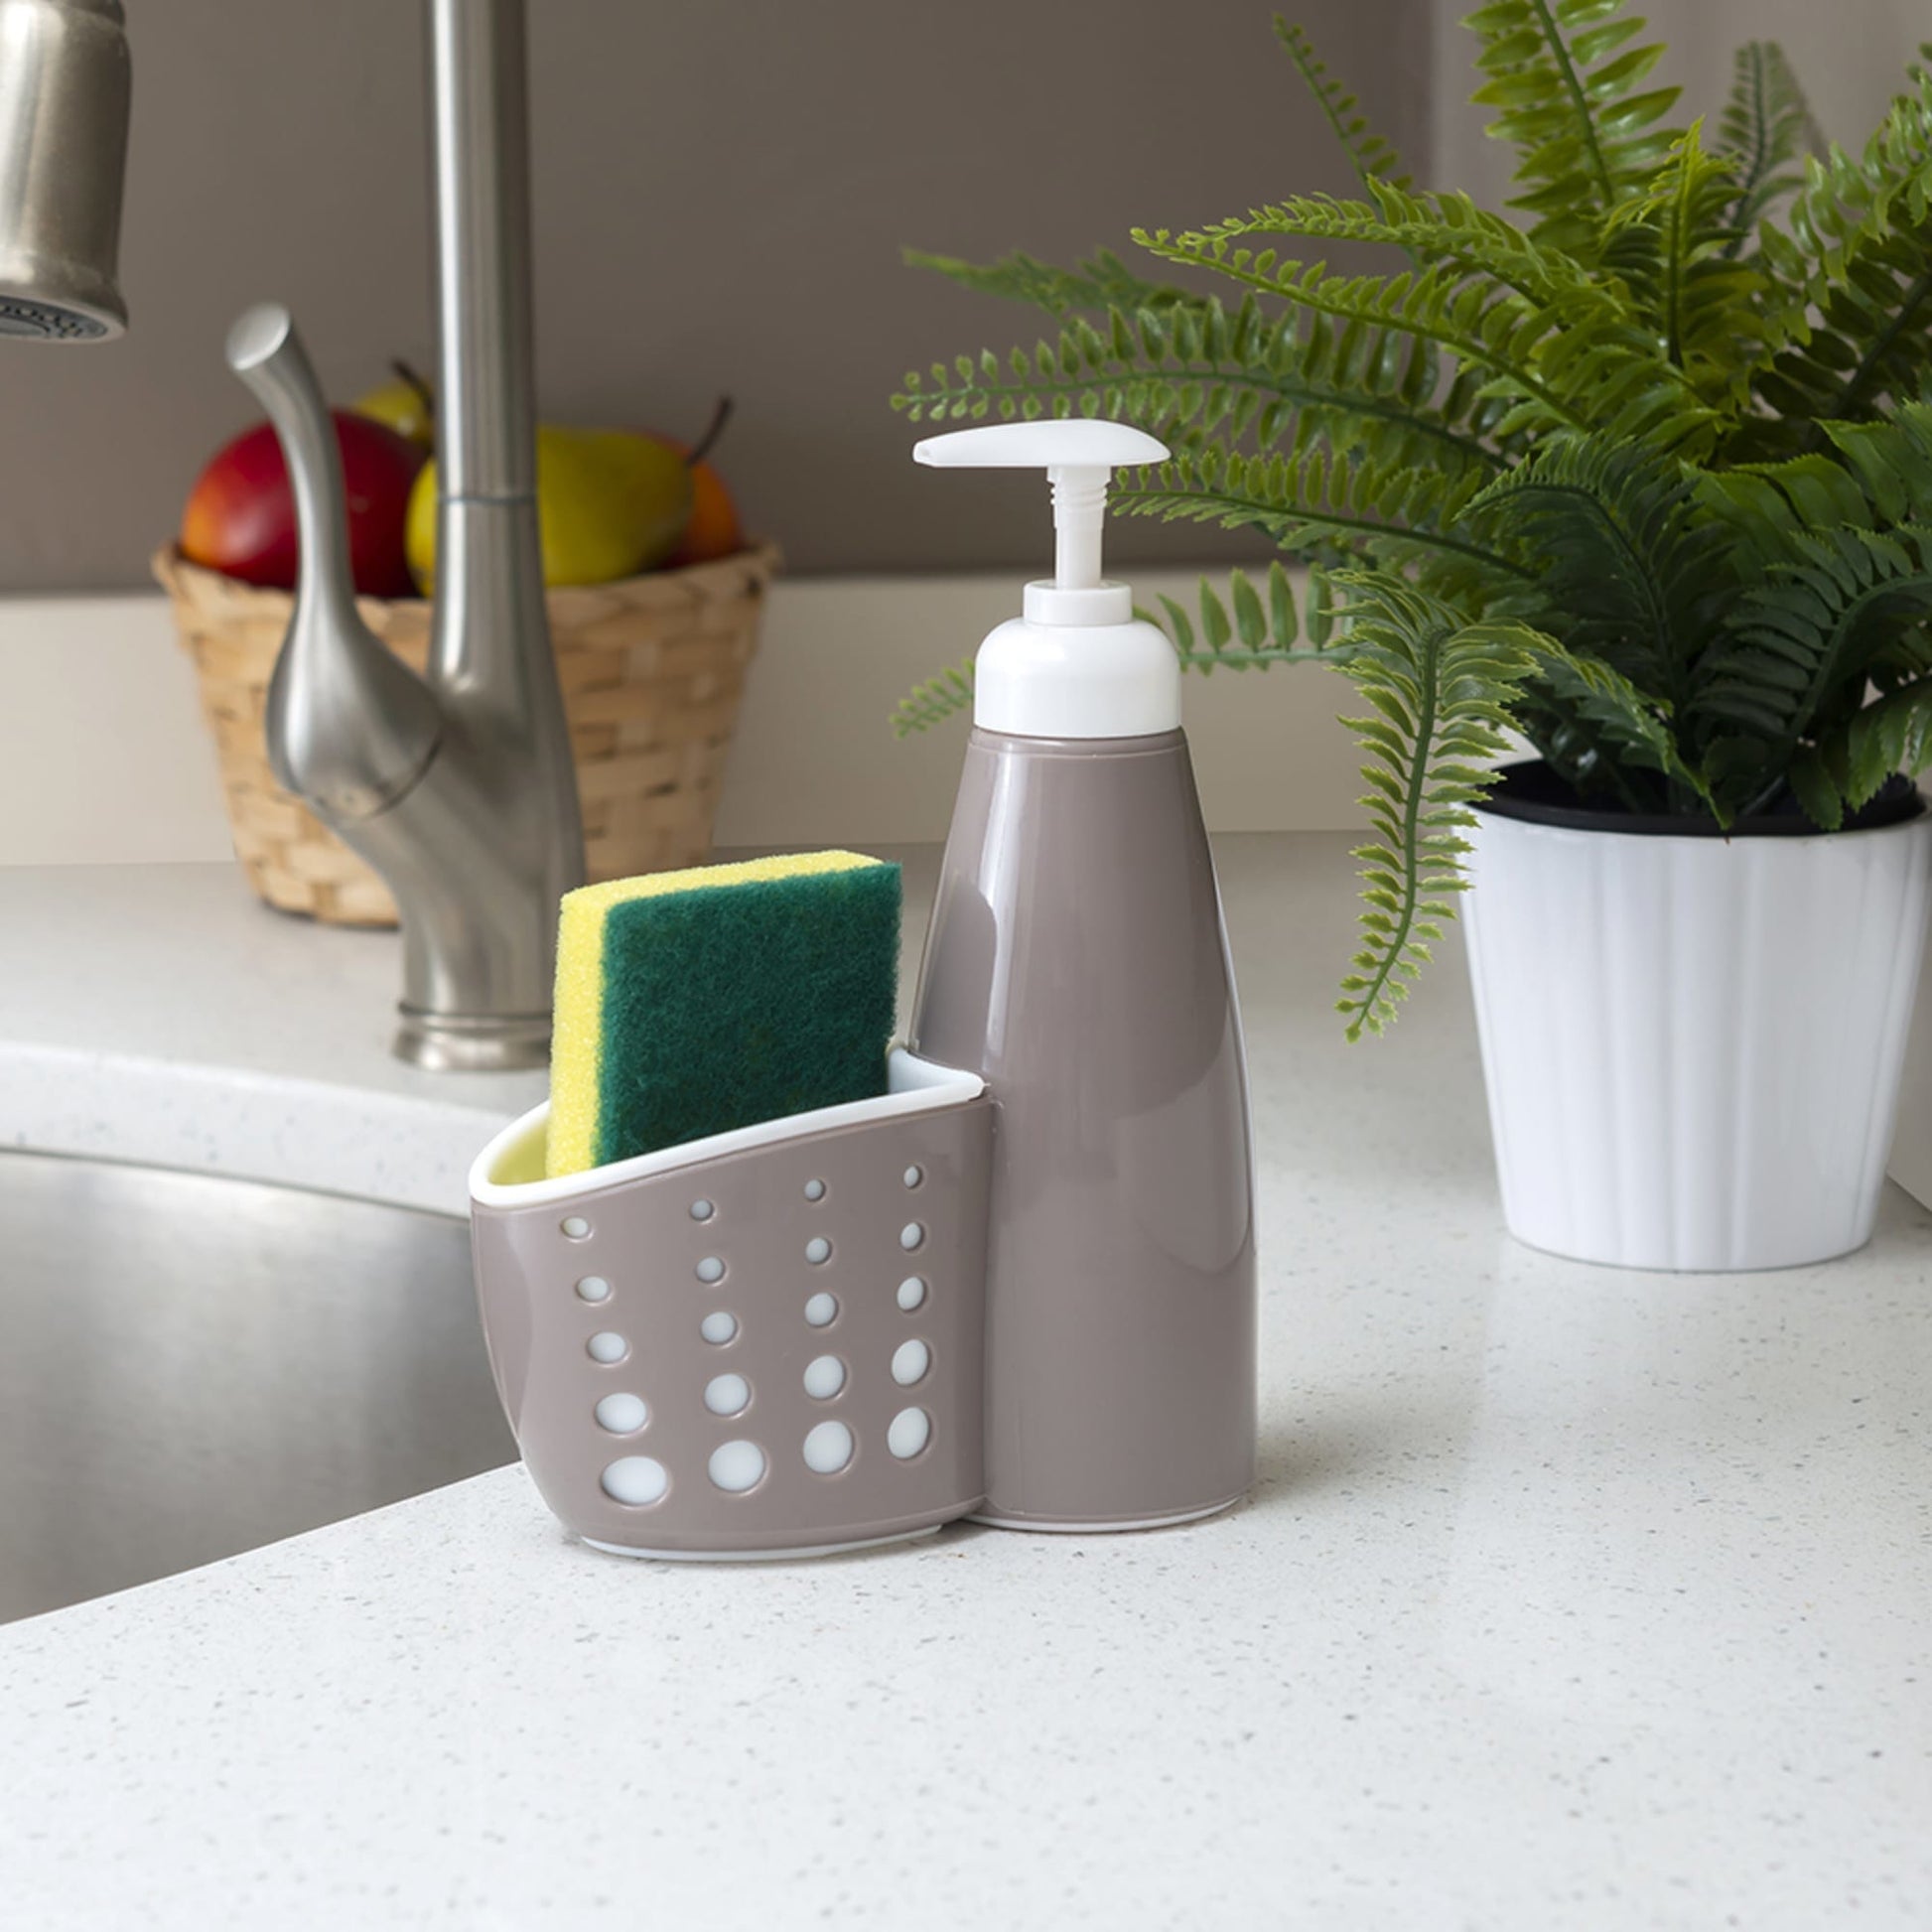 Home Basics Draining Faucet Sponge Holder, White/Grey